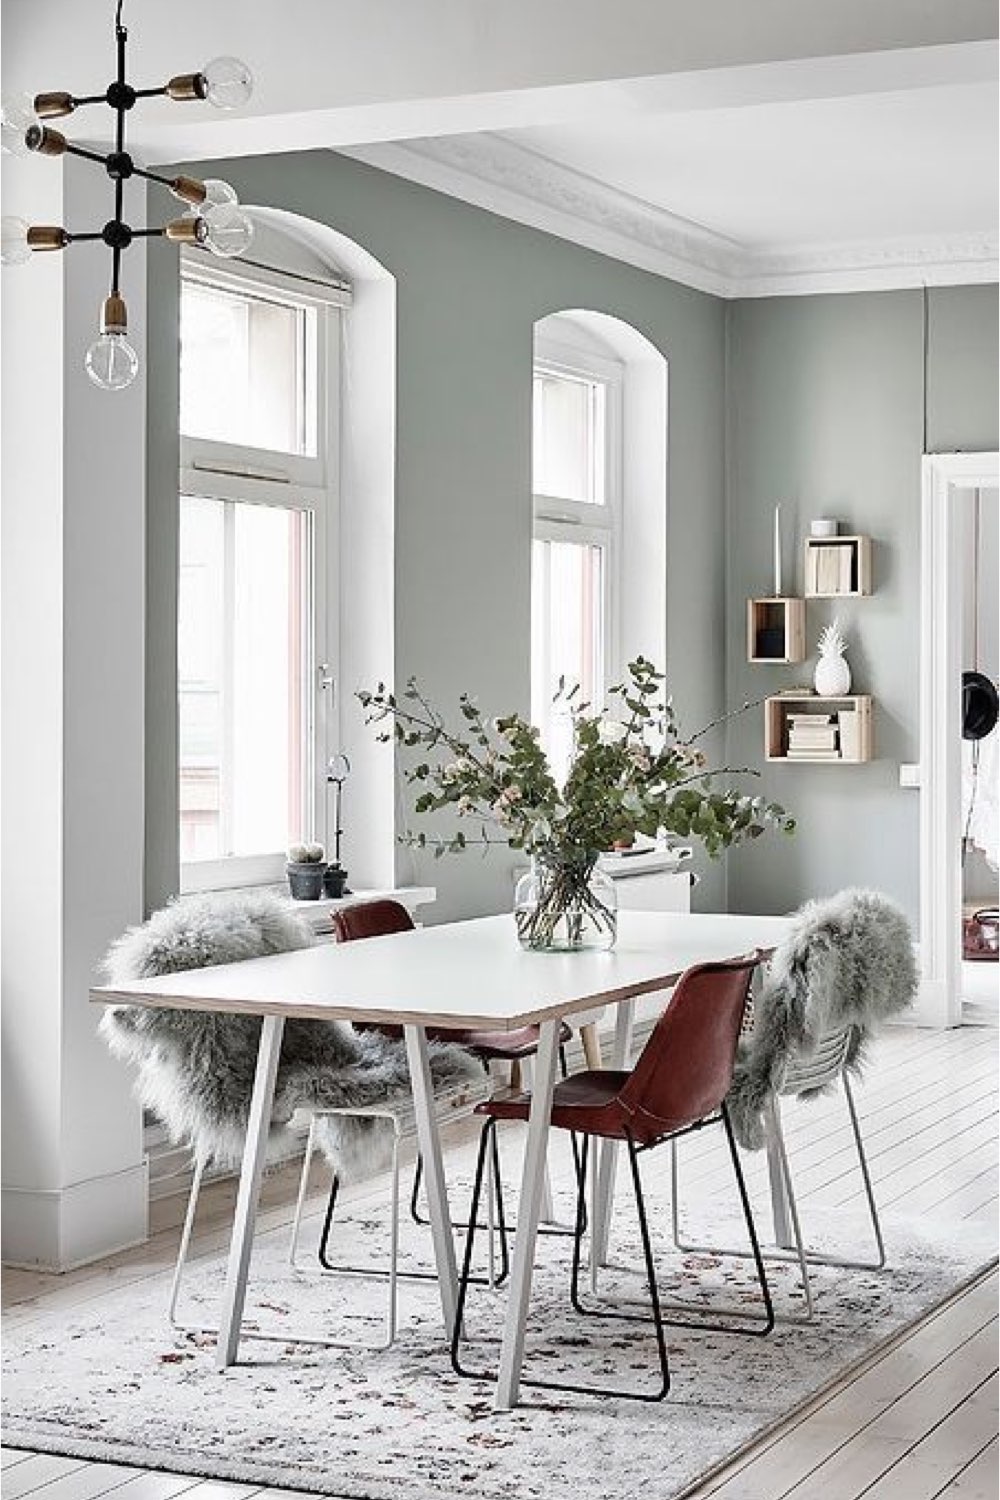 decor salle a manger couleur gris exemple 7 teinte très claire espace lumineux grand tapis table blanche scandinave nordique